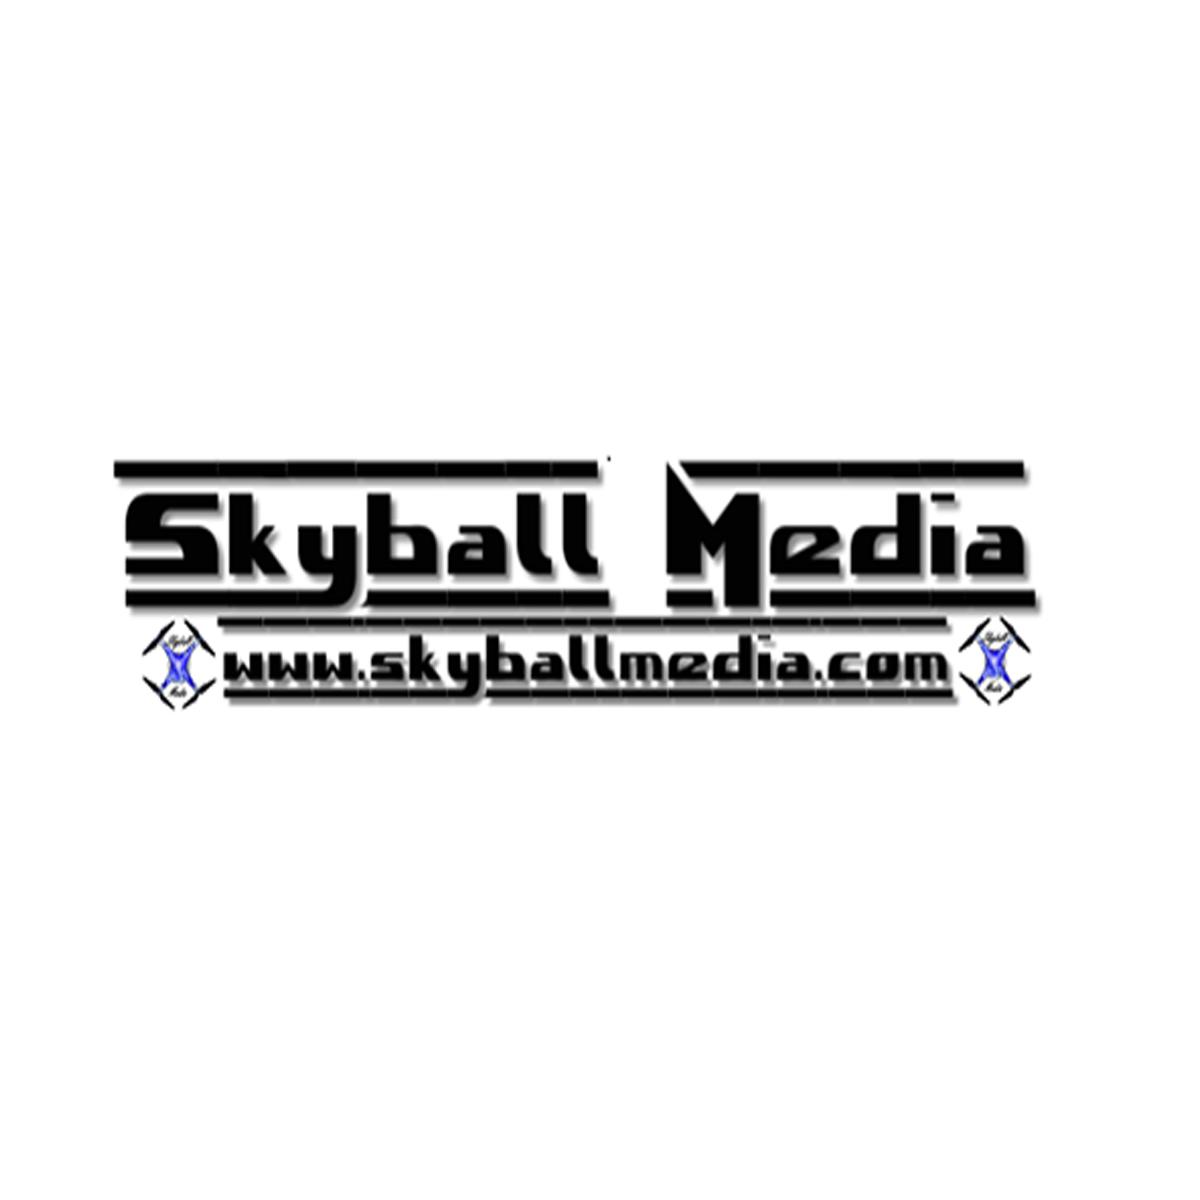 Skyball Media